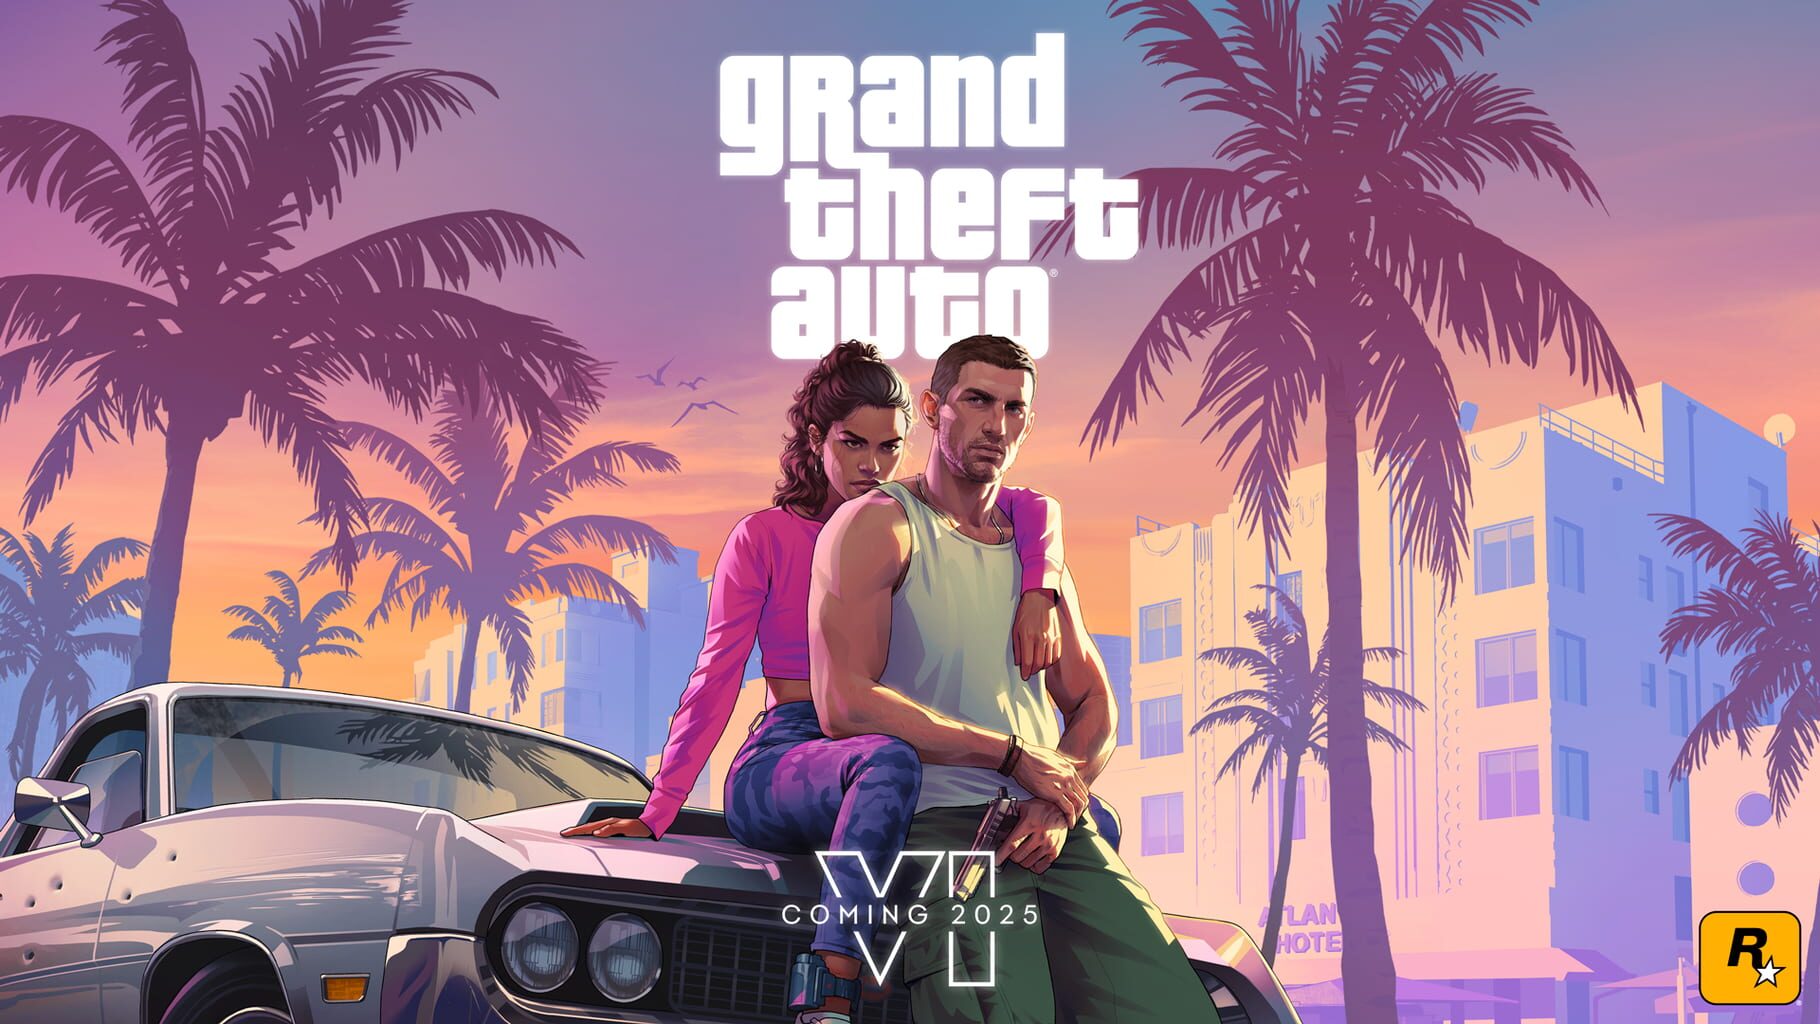 Artwork for Grand Theft Auto VI